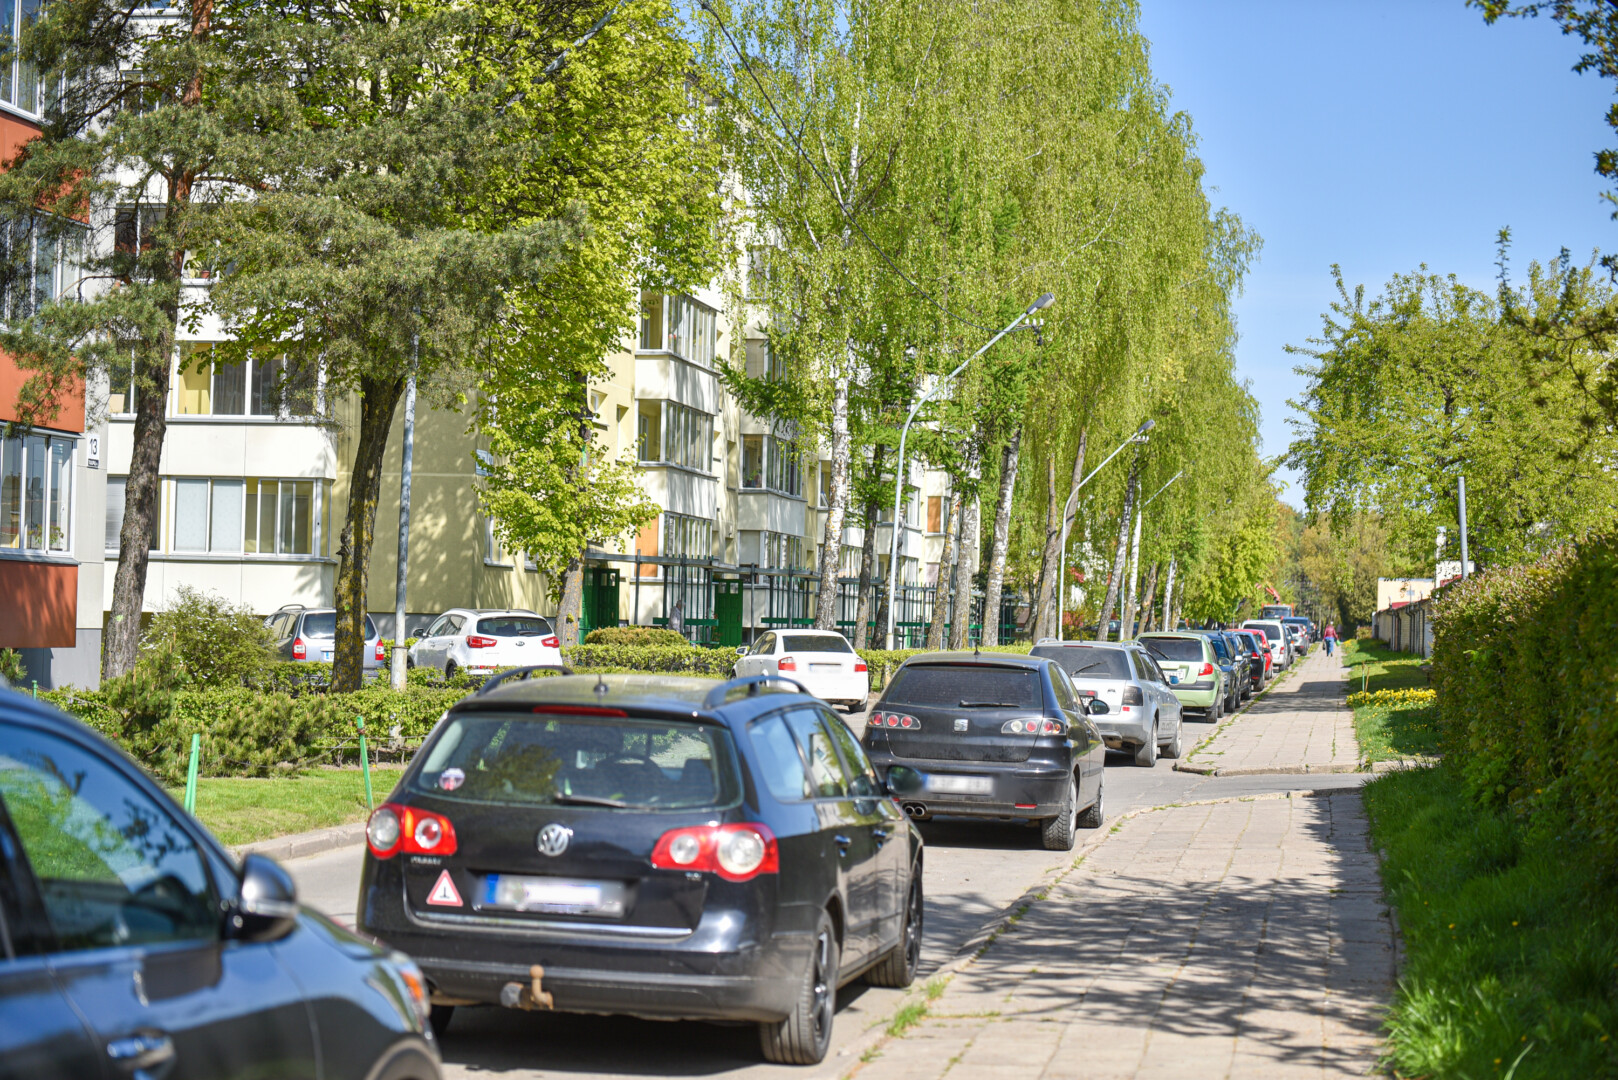 Gyventojams siūloma patiems apsispręsti – šioje Aido gatvėje visai uždrausti parkavimą ar ir toliau leisti statyti automobilius, bet palikti tik vienpusį eismą. P. ŽIDONIO nuotr.